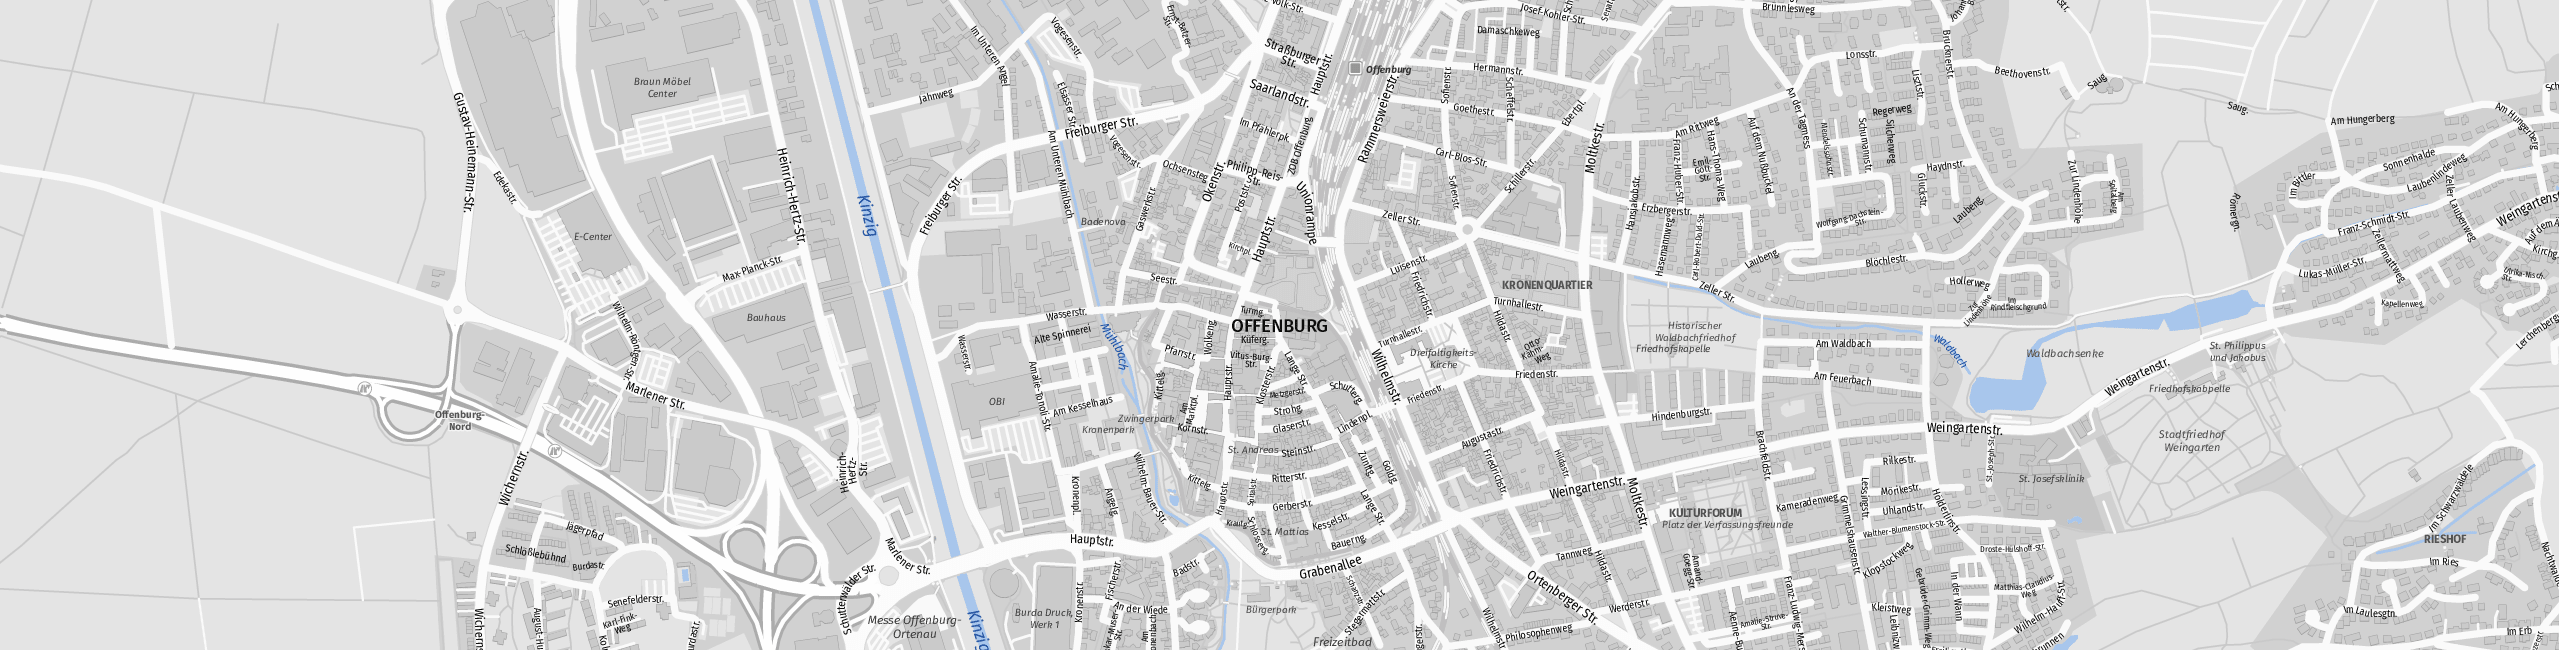 Stadtplan Offenburg zum Downloaden.